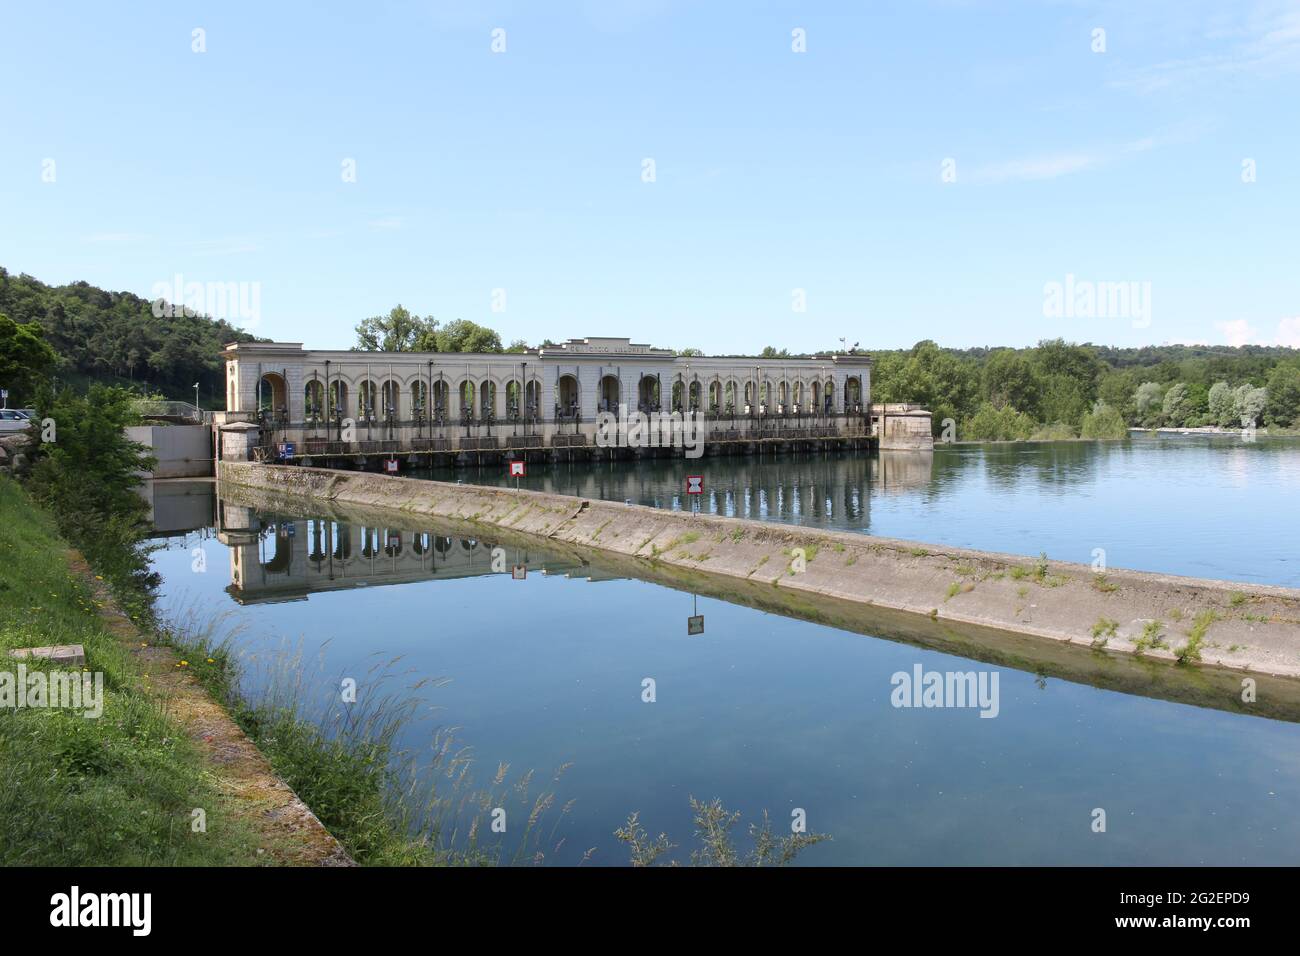 Panperduto, Somma Lombardo, Varèse / Italie, juin 2021: Le Ticino au barrage de Panperduto dans le Parc du Tessin. Banque D'Images